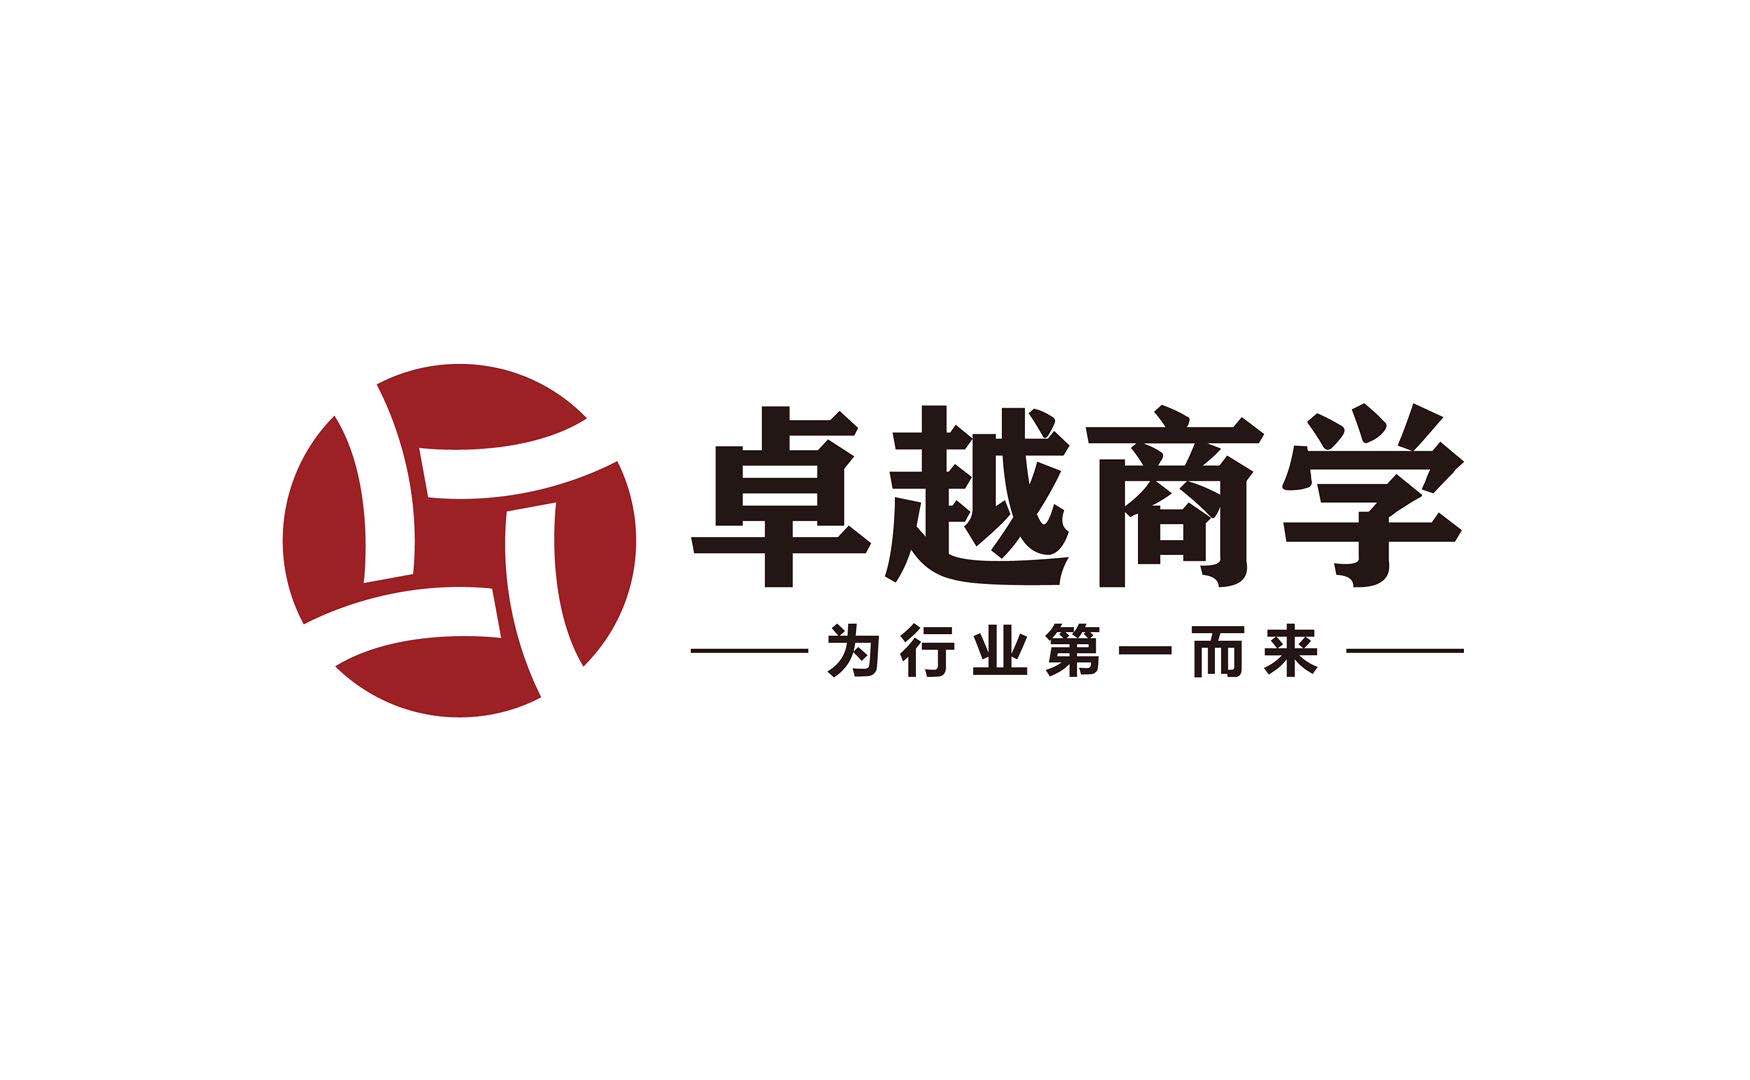 广州卓越商学企业管理顾问有限公司logo